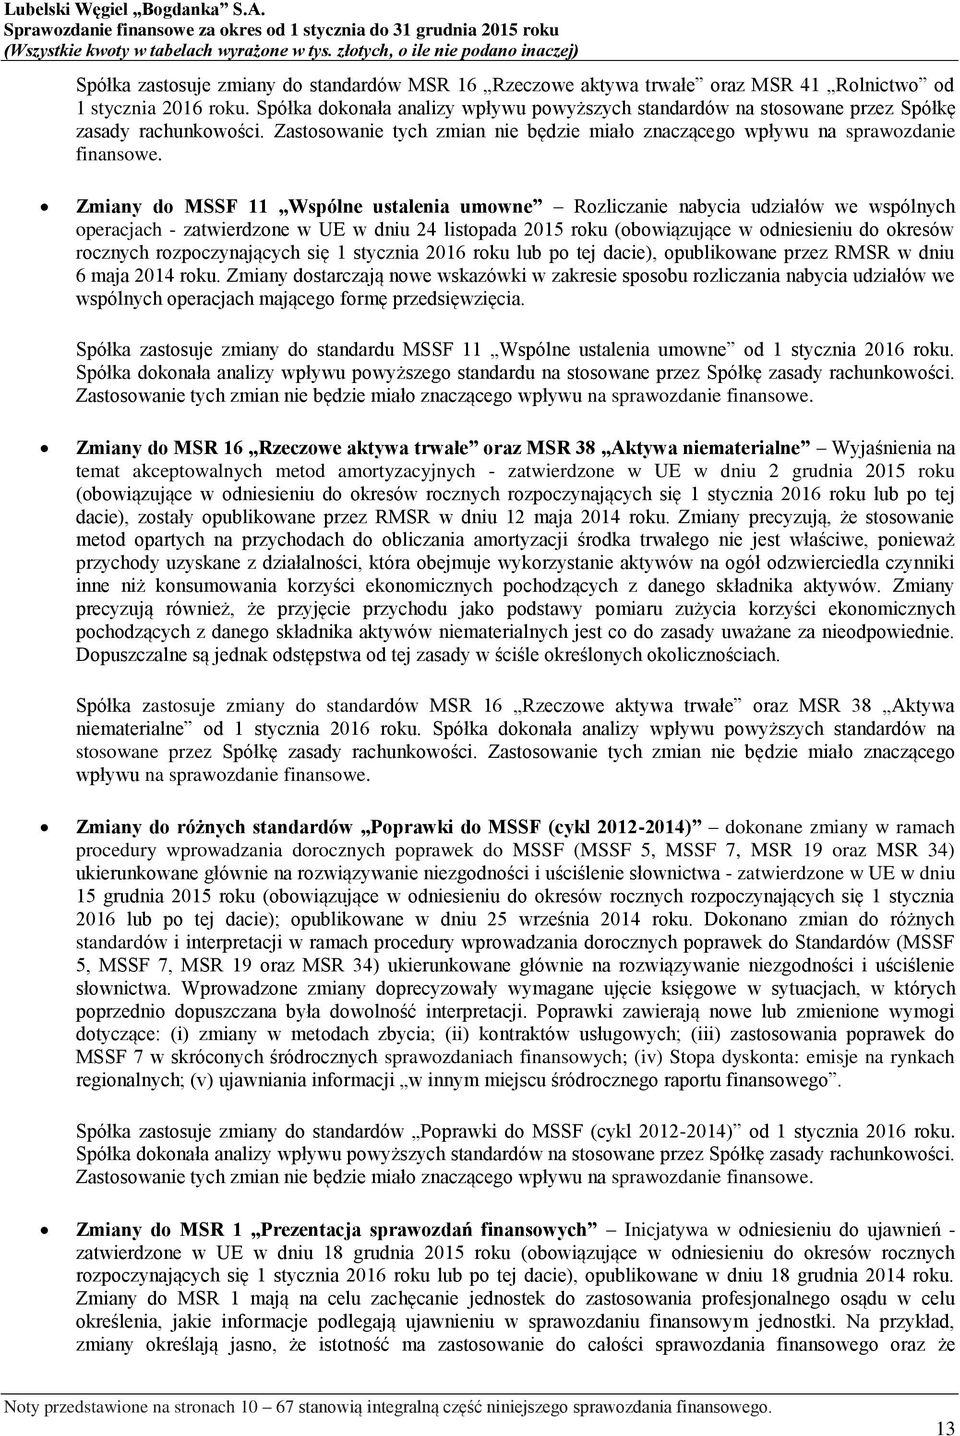 Zmiany do MSSF 11 Wspólne ustalenia umowne Rozliczanie nabycia udziałów we wspólnych operacjach - zatwierdzone w UE w dniu 24 listopada 2015 roku (obowiązujące w odniesieniu do okresów rocznych